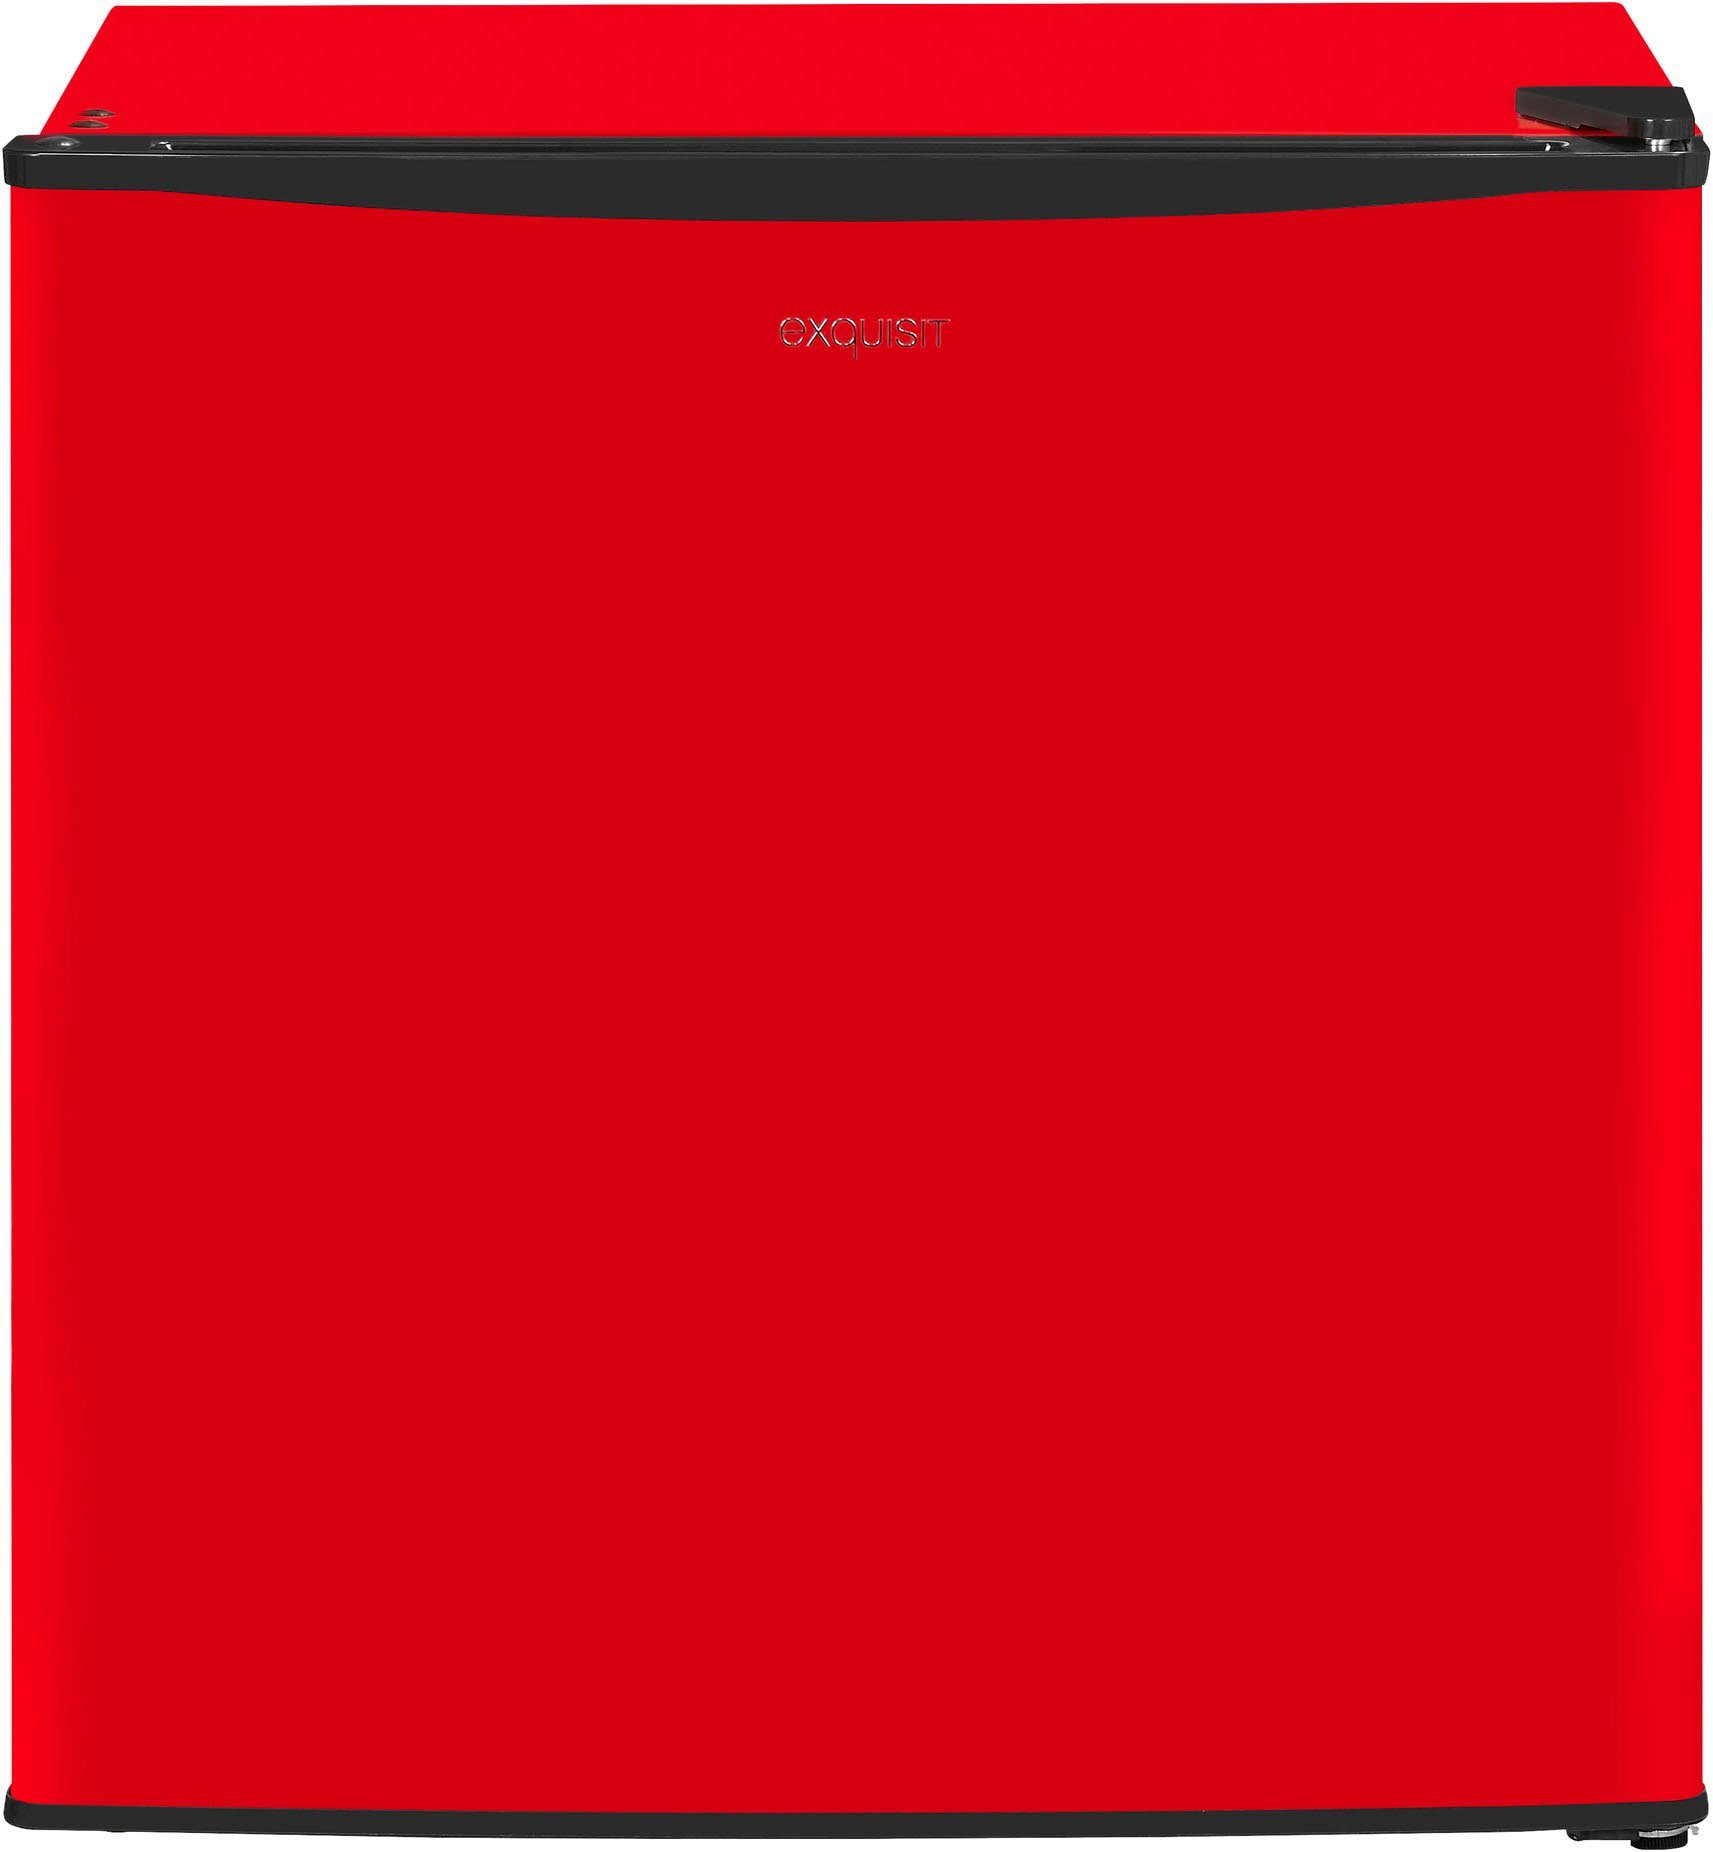 exquisit Gefrierschrank GB40-150E rot, 51 cm hoch, breit 47 cm